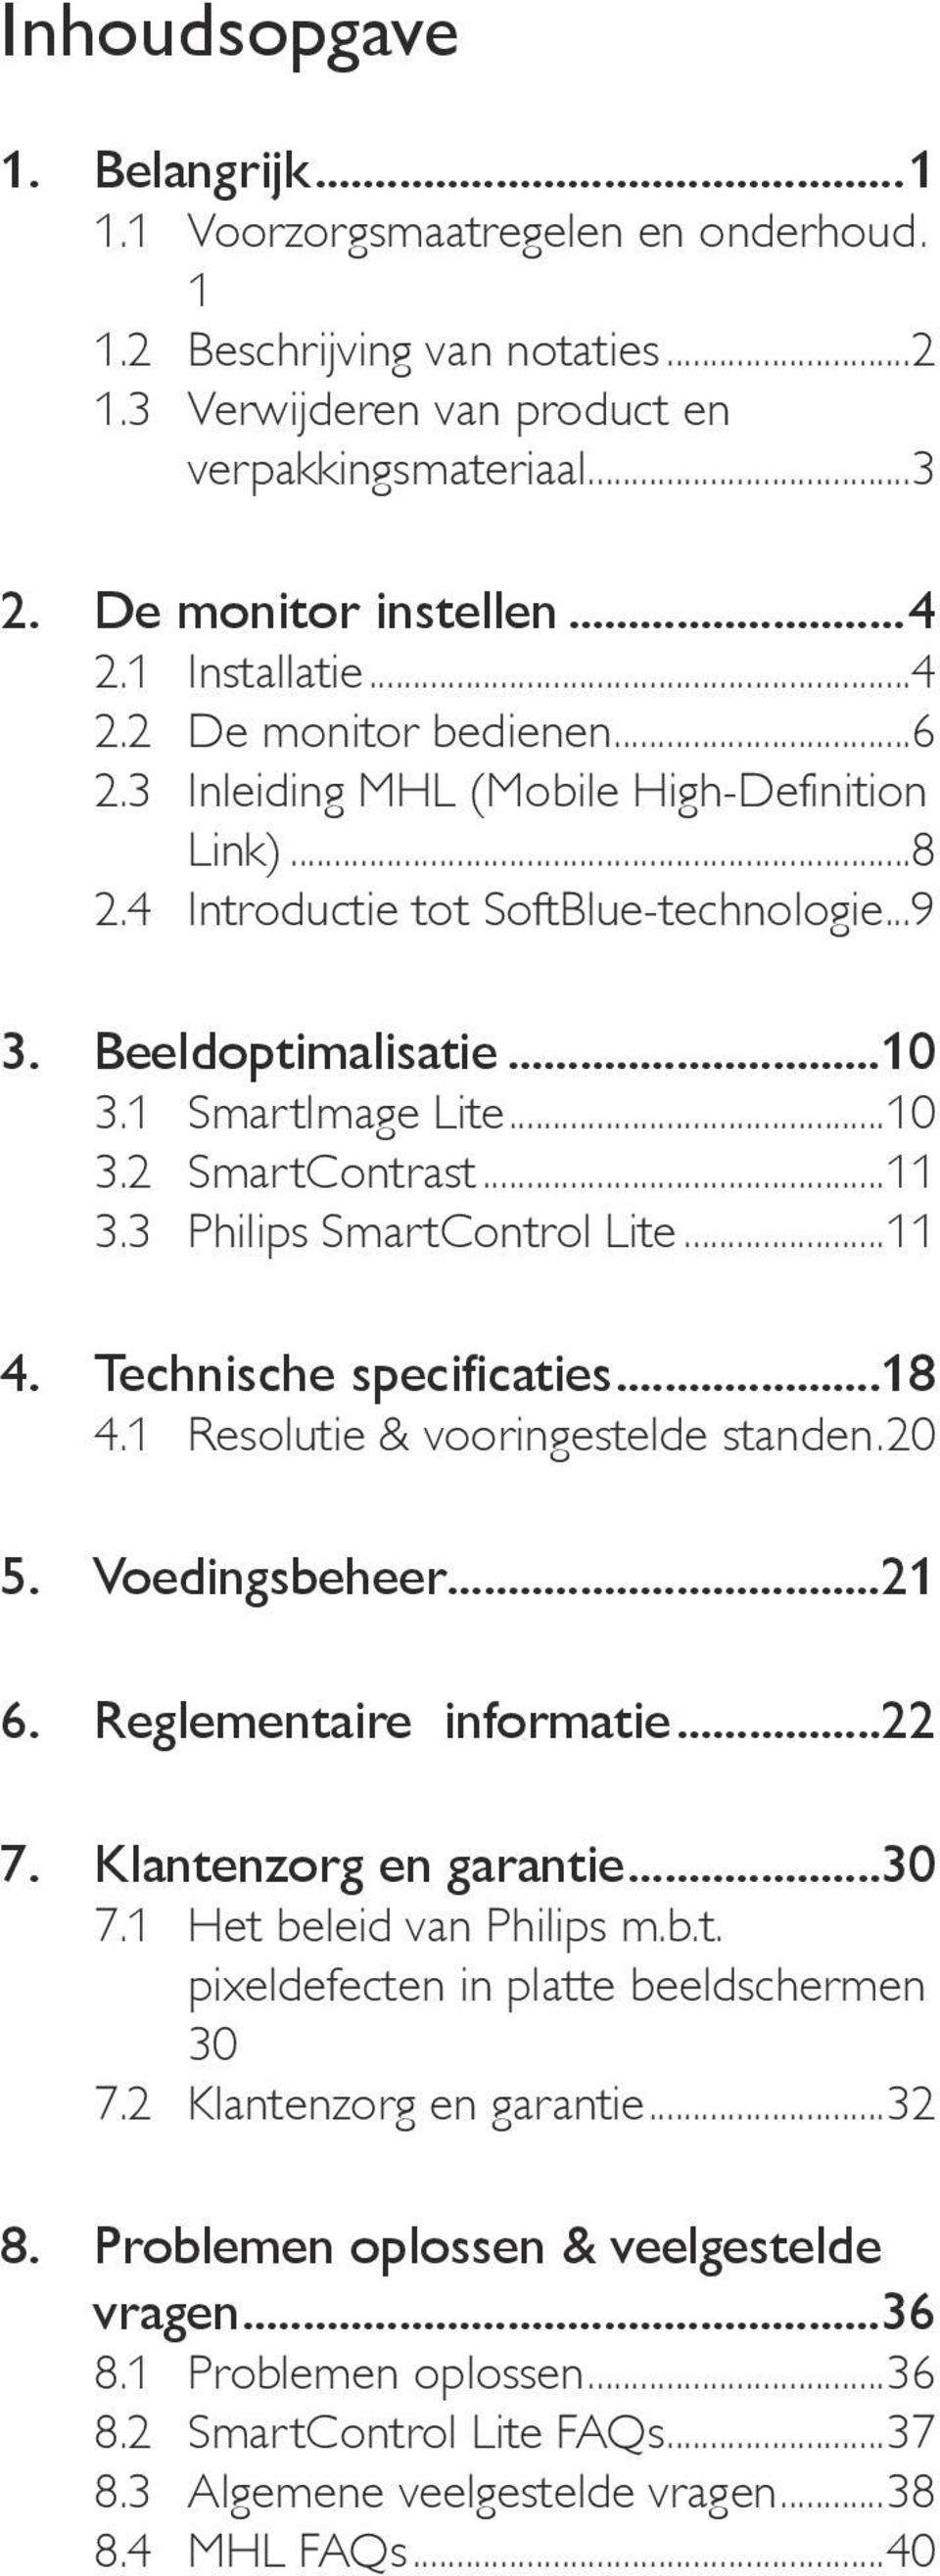 ..11 3.3 Philips SmartControl Lite...11 4. Technische specificaties...18 4.1 Resolutie & vooringestelde standen..20 5. Voedingsbeheer...21 6. Reglementaire informatie...22 7. Klantenzorg en garantie.